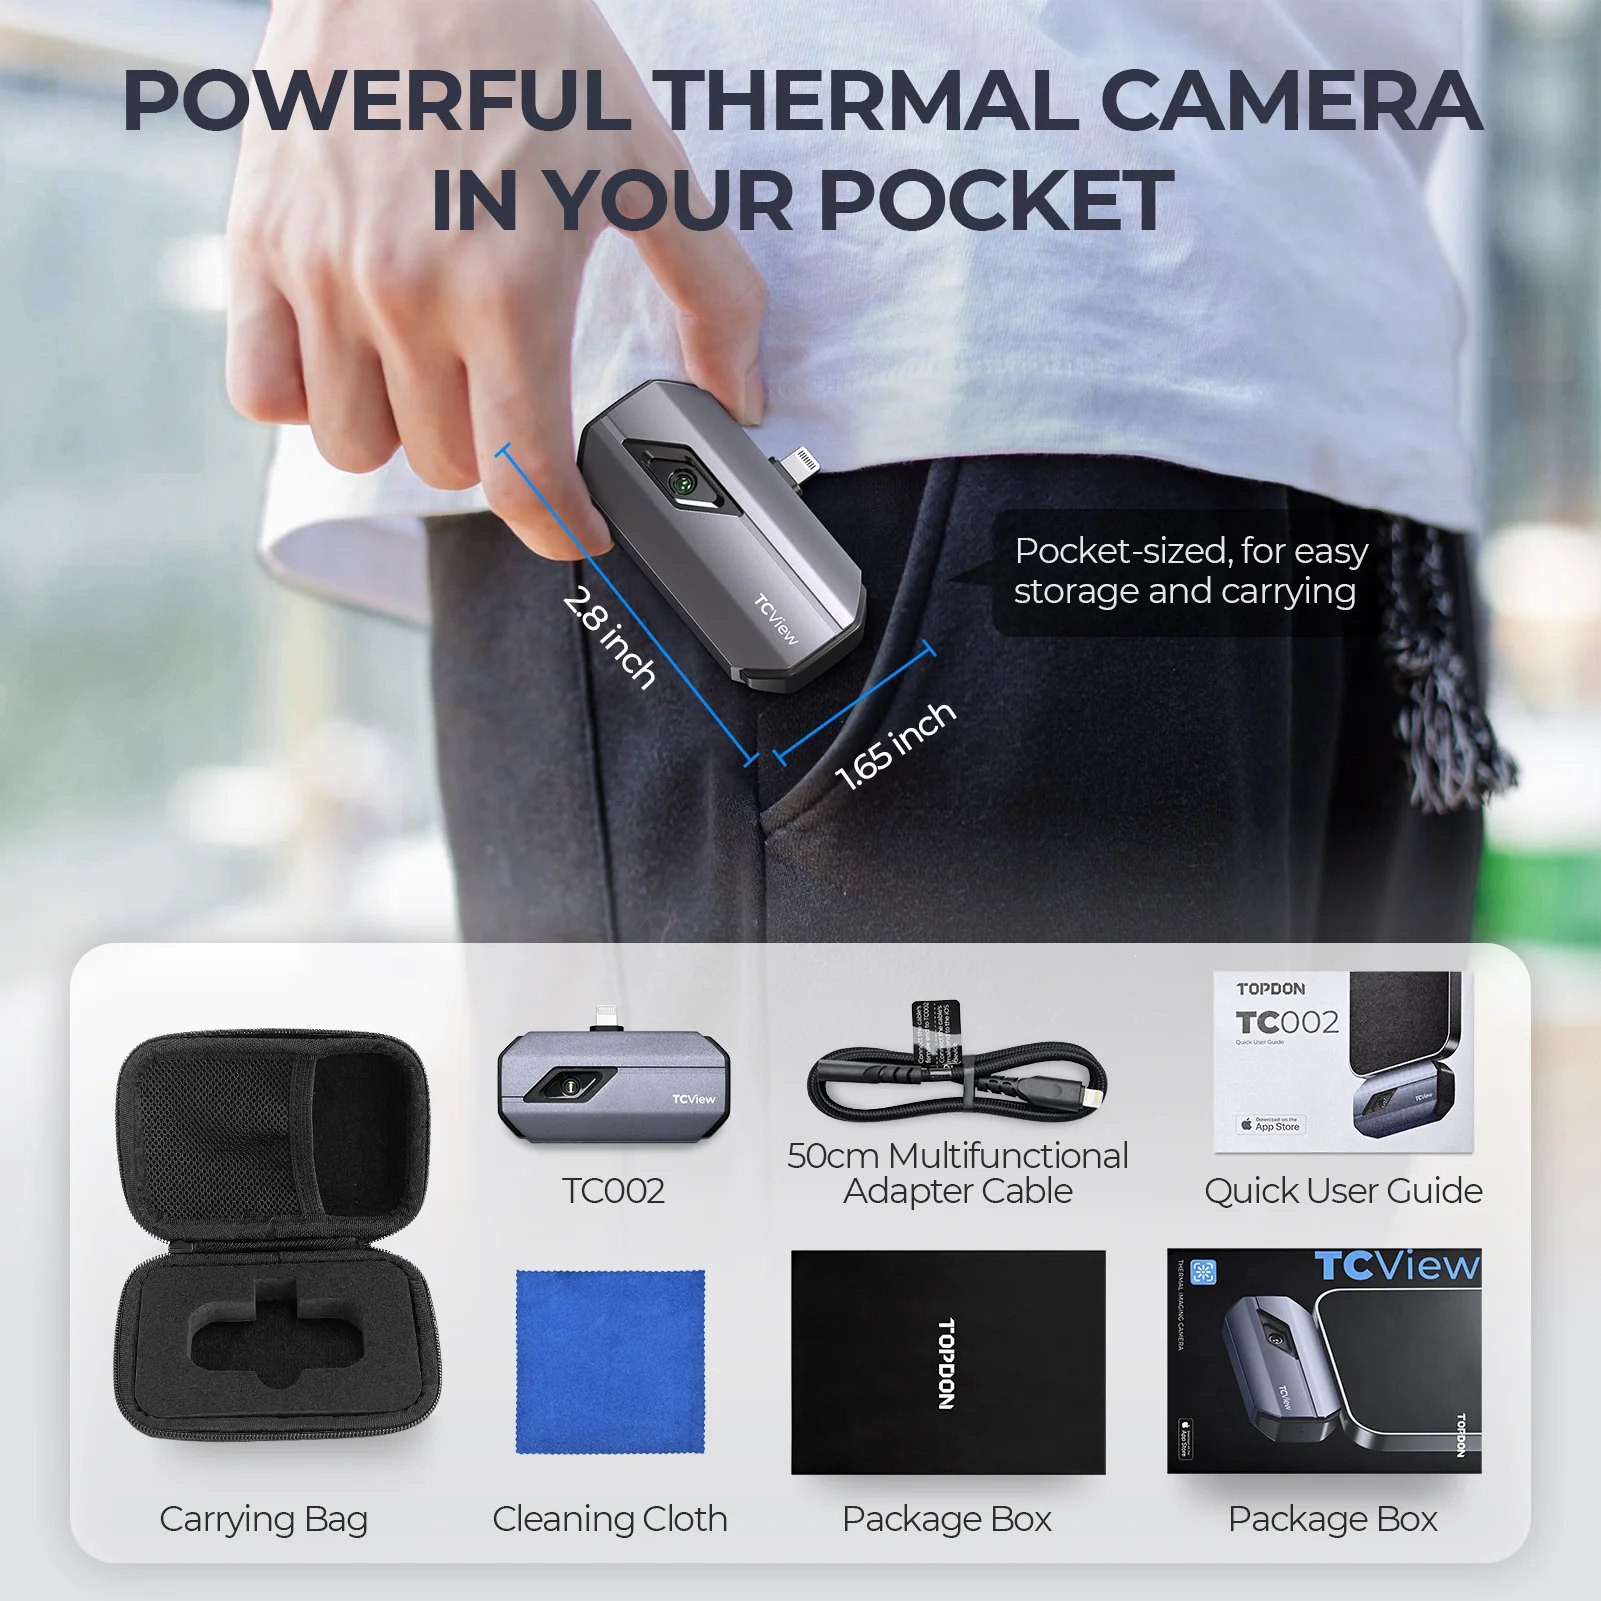 Topdon TC002 iOS Thermal Camera